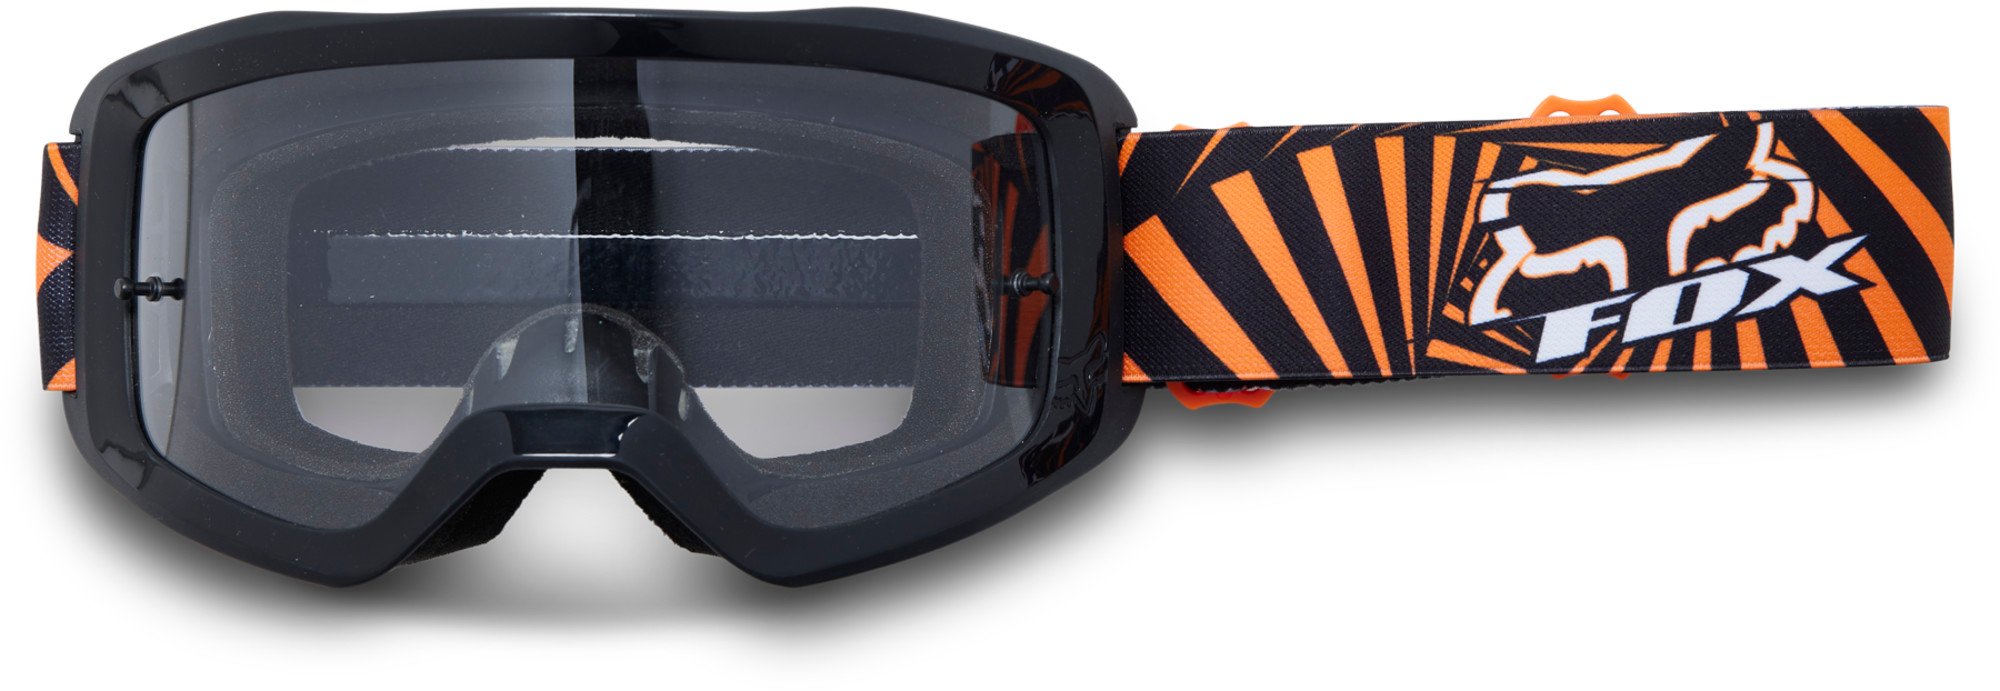 motocross lunettes & lentilles par fox racing pour enfants main goat